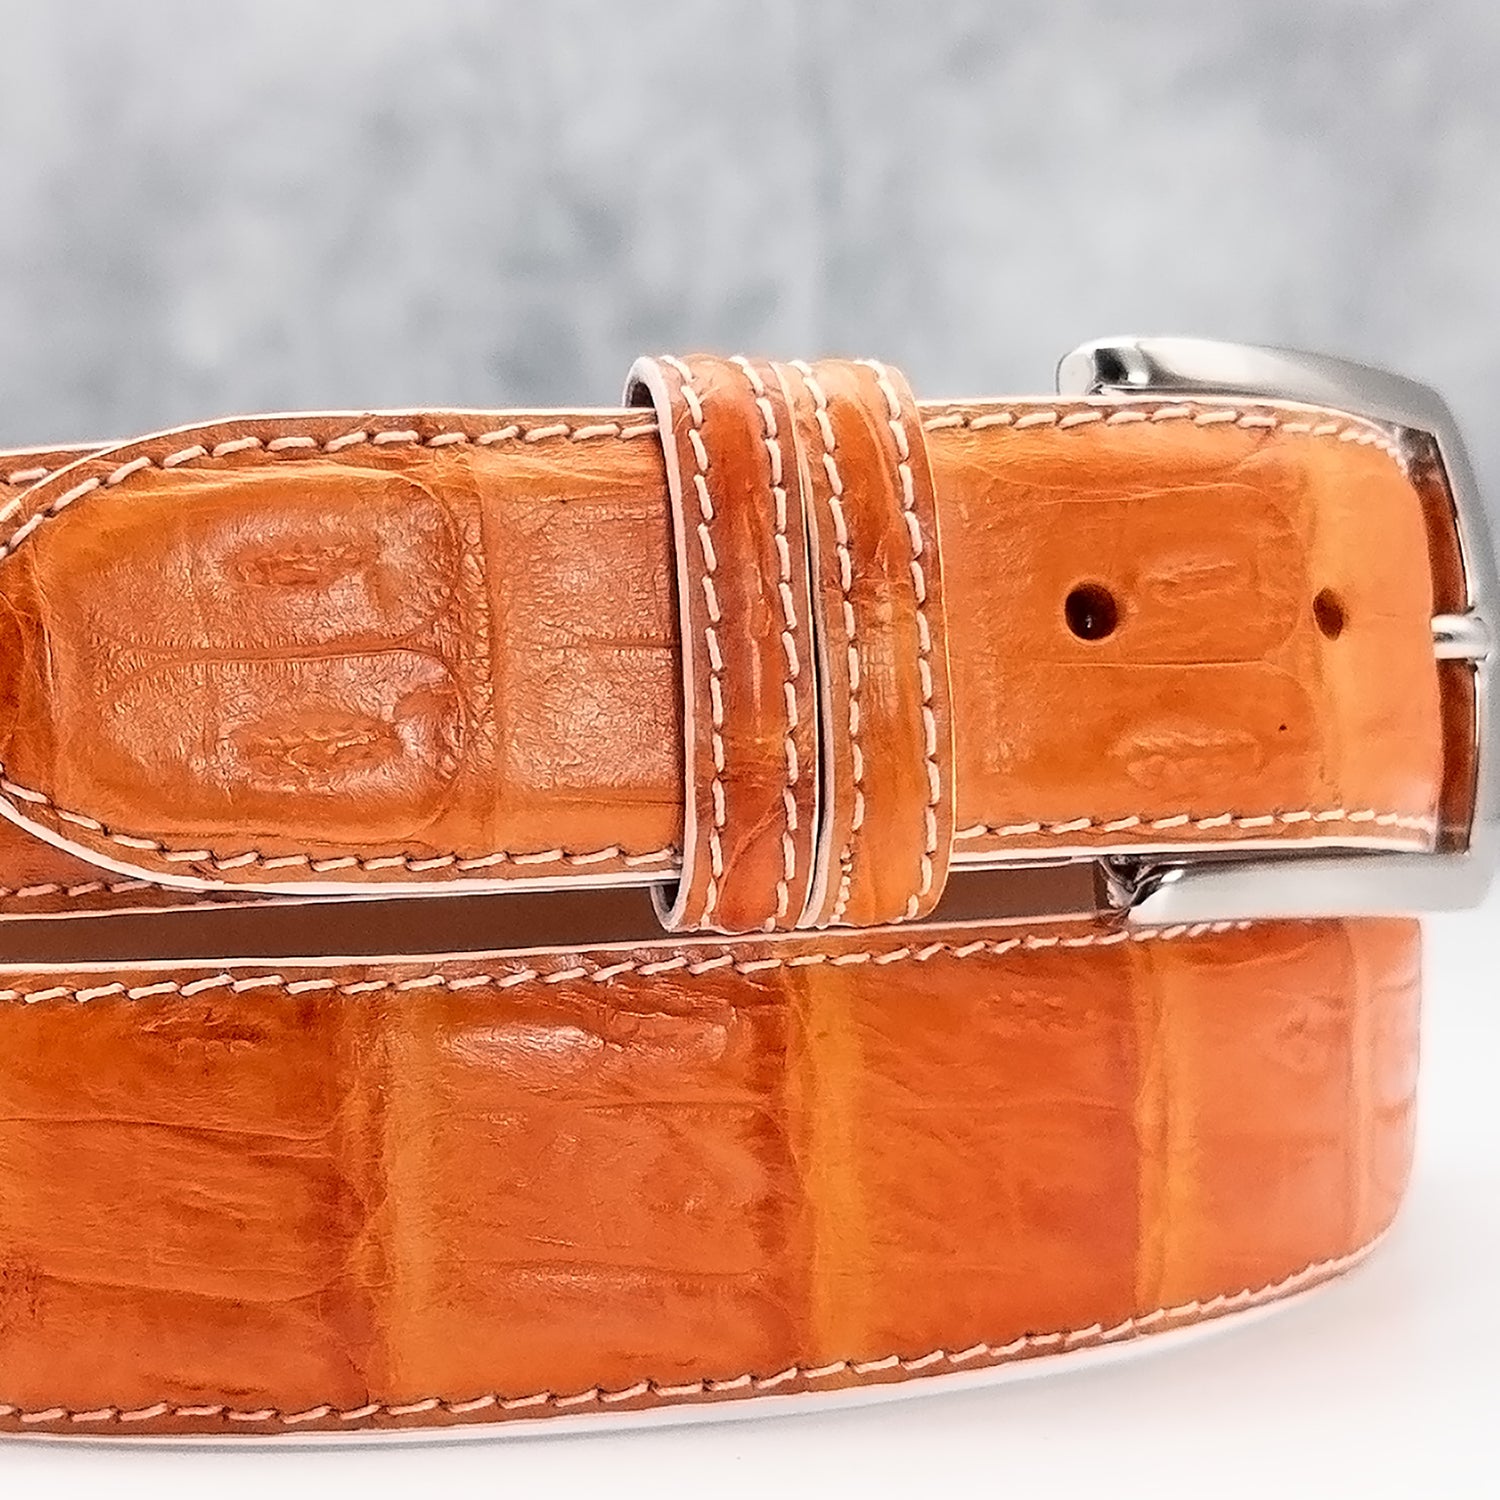 Matte Caiman Tail Belt: Orange